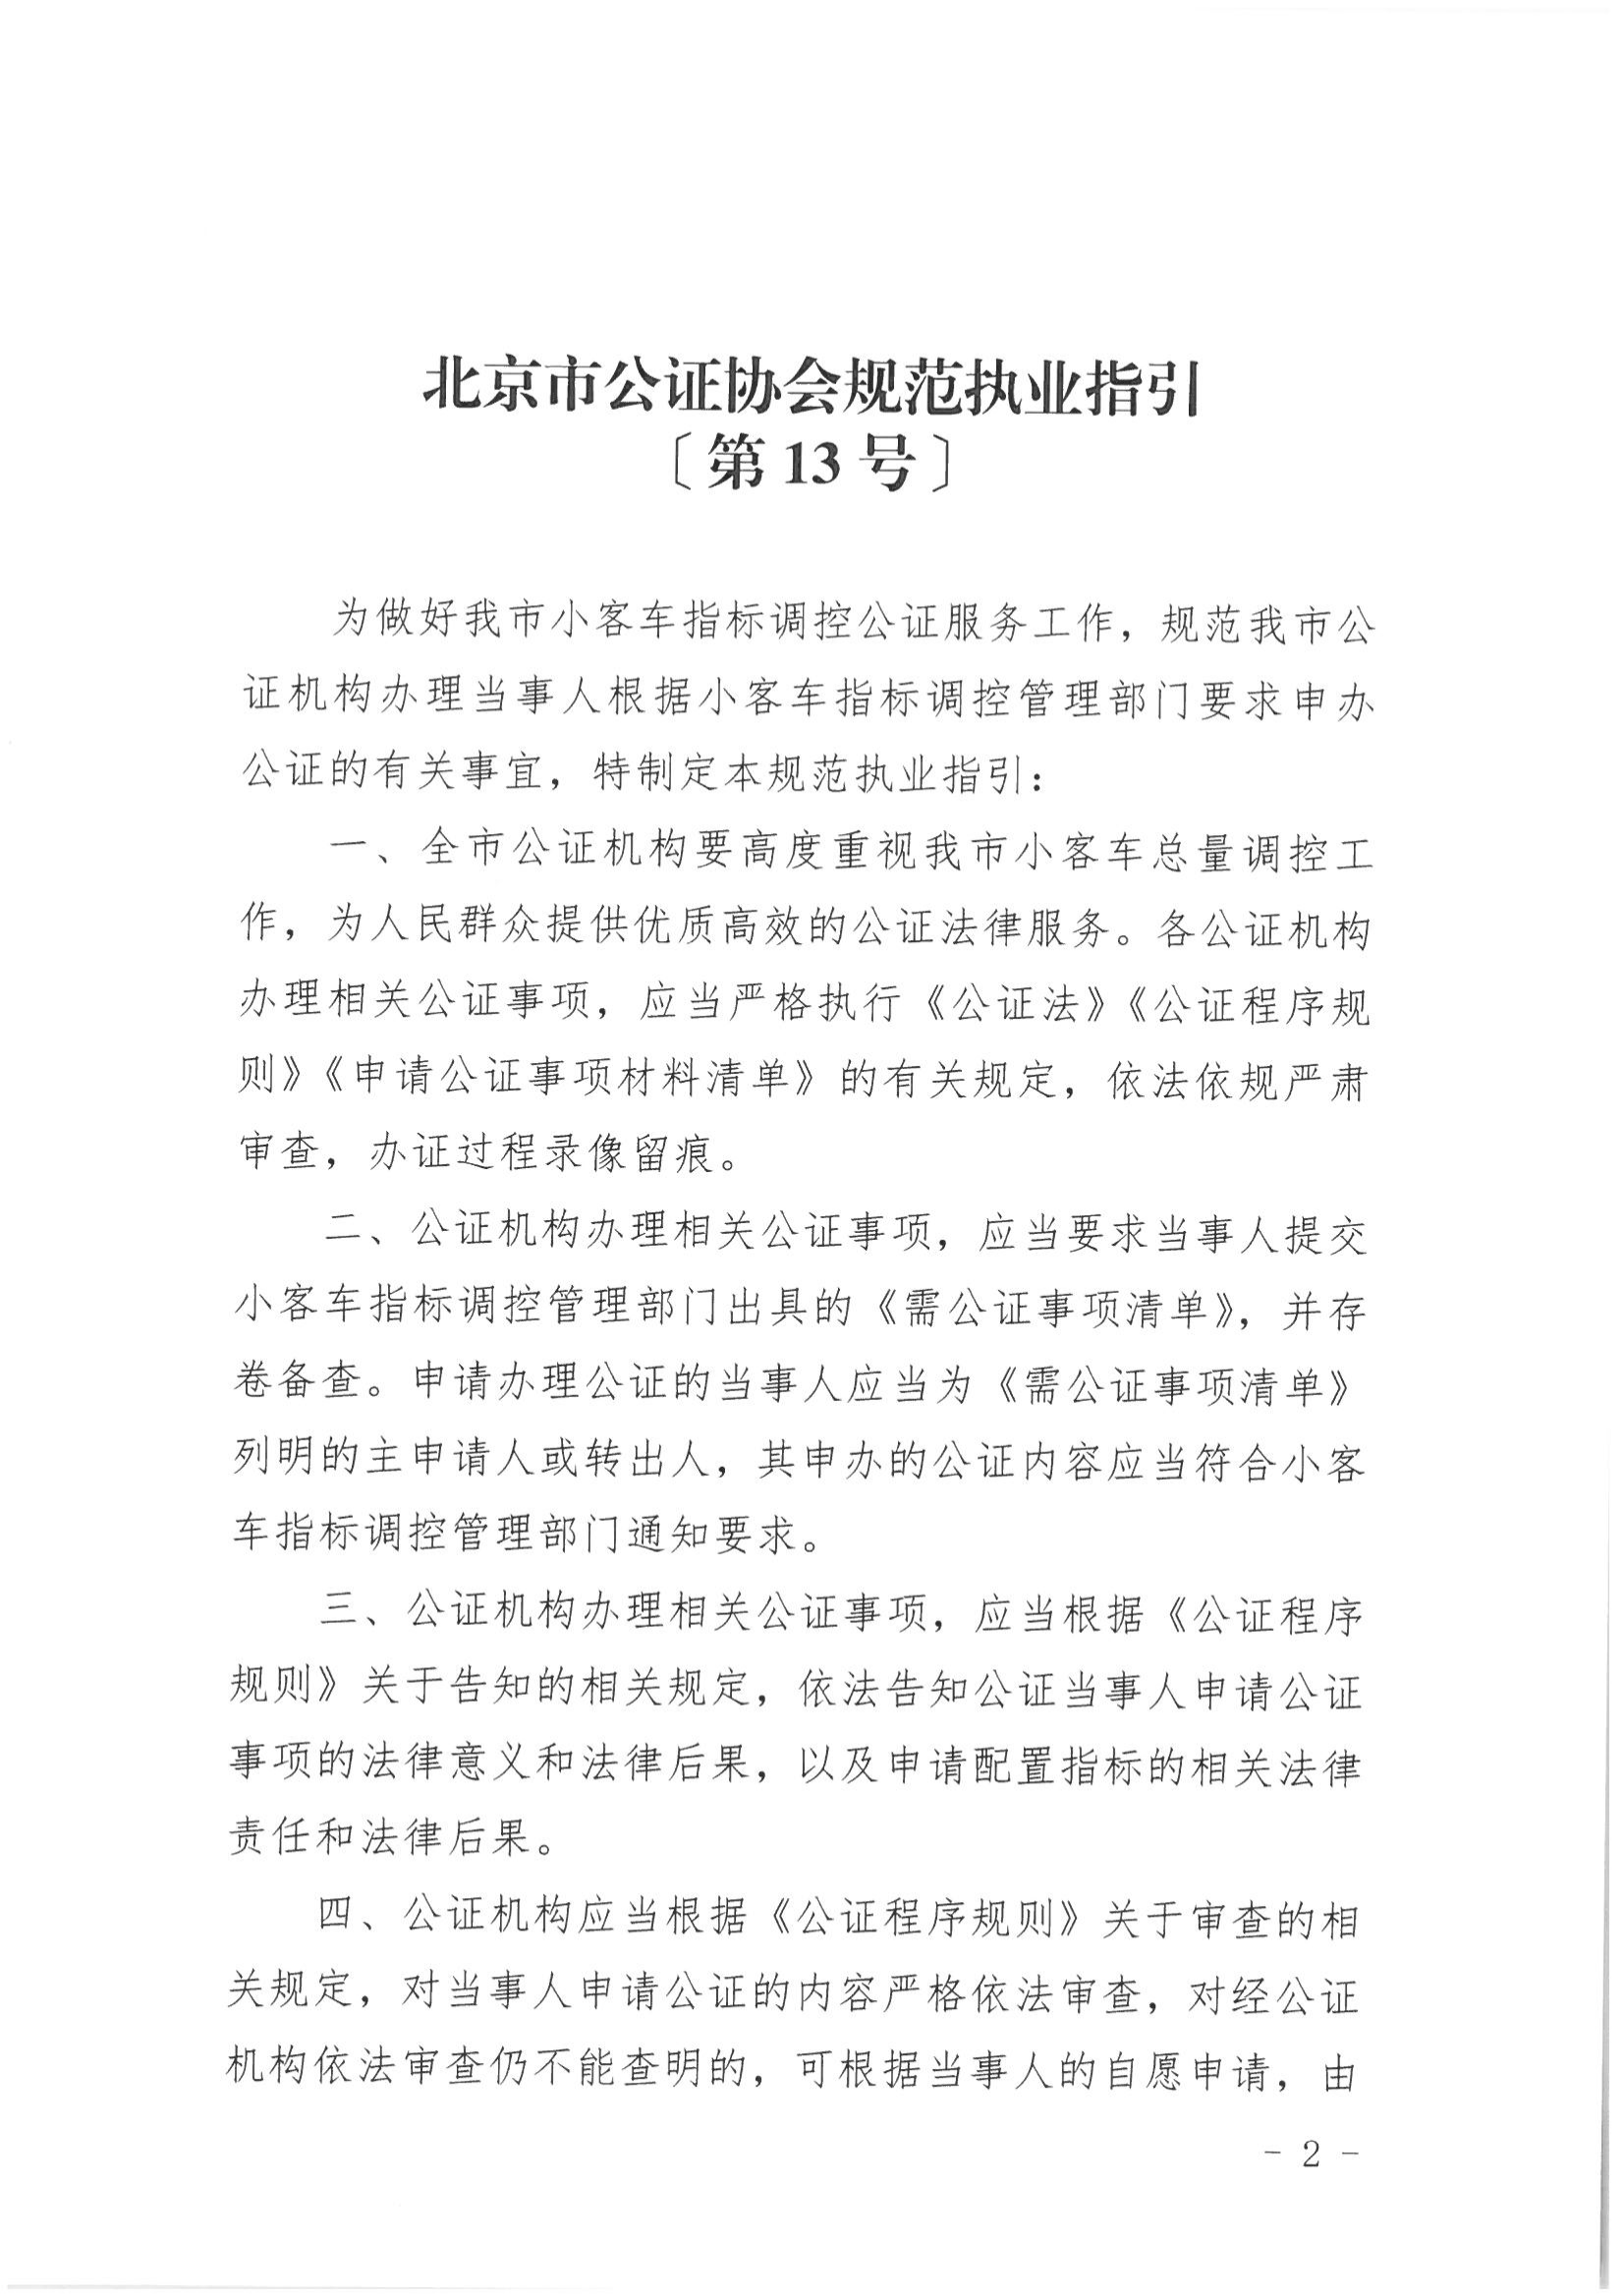 京公协字【2021】21号 北京市公证协会规范执业指引【第13号】_02